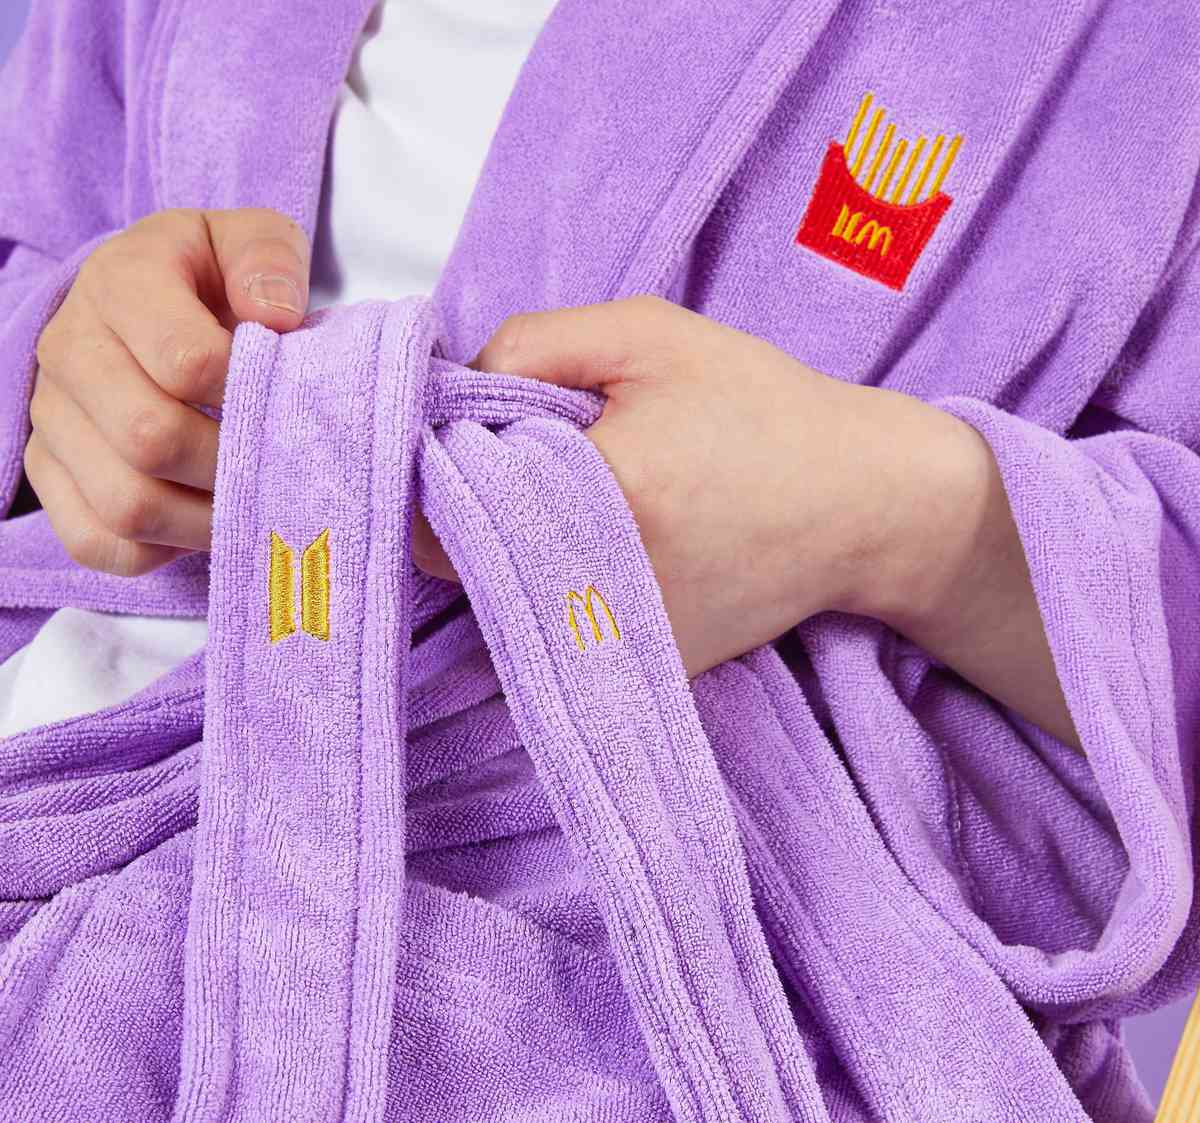 McDonald's x BTS bathrobe